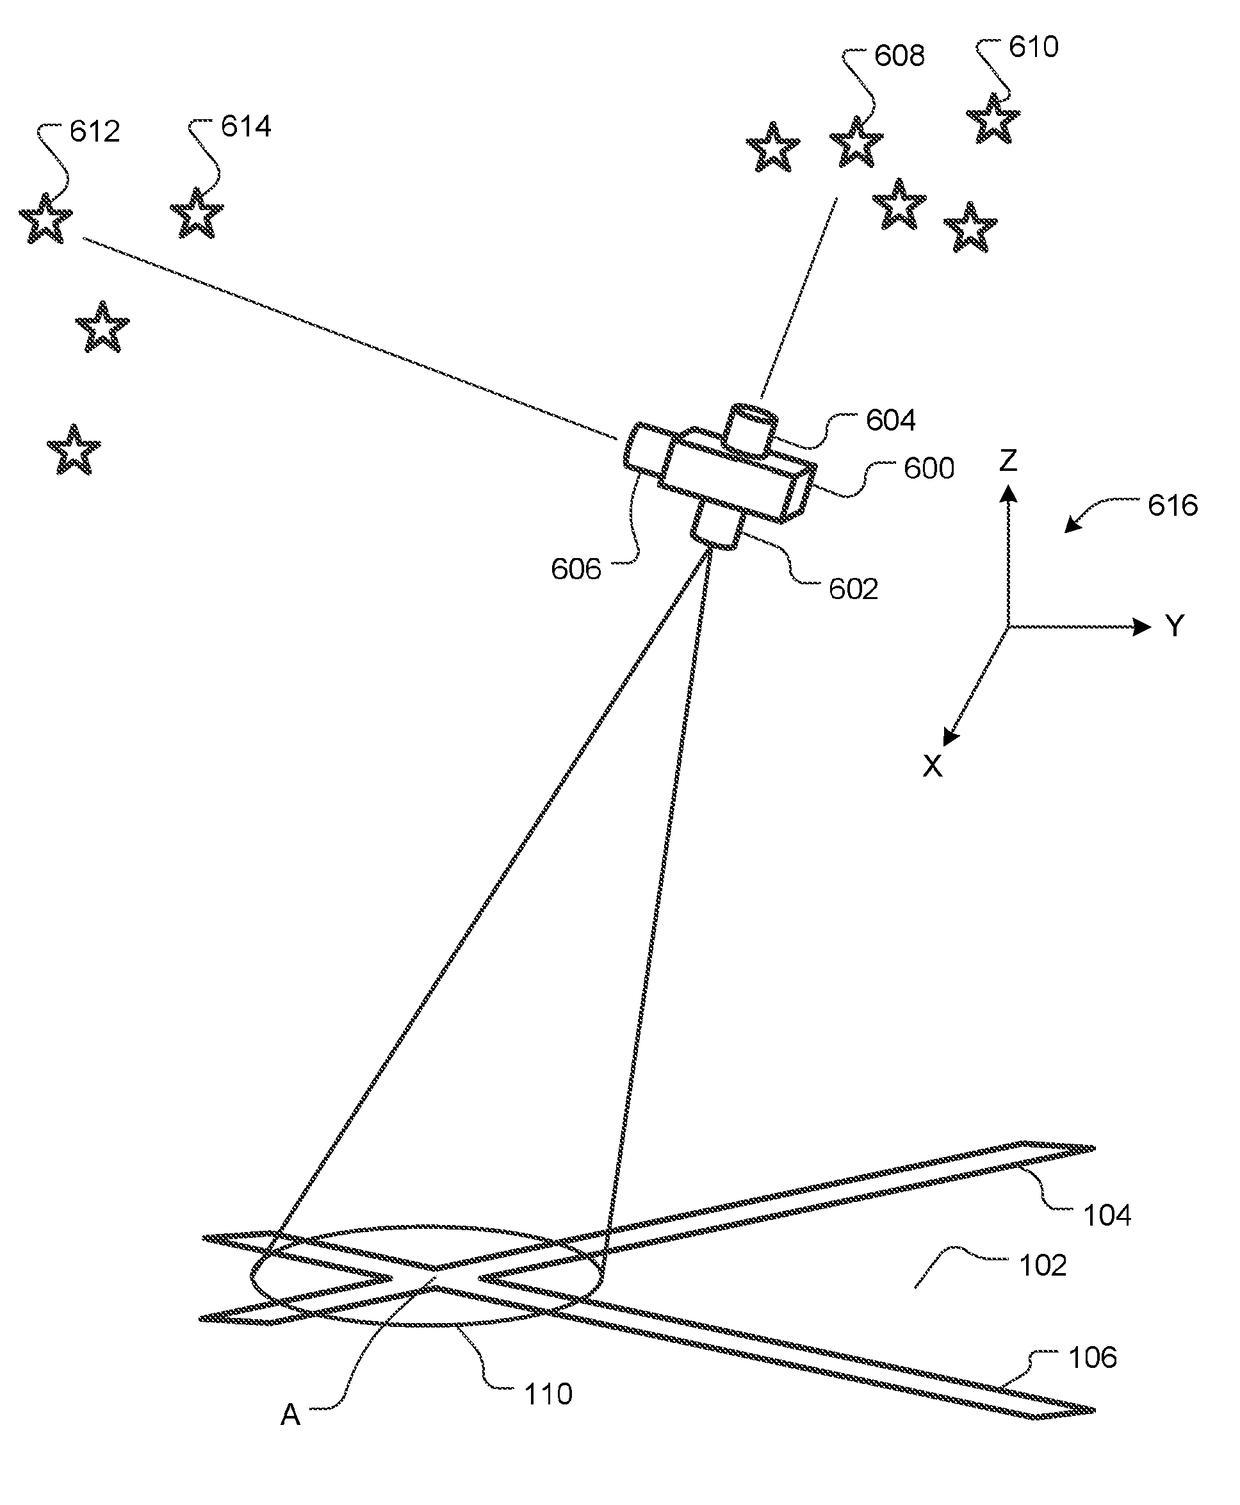 Star Tracker-Aided Airborne or Spacecraft Terrestrial Landmark Navigation System